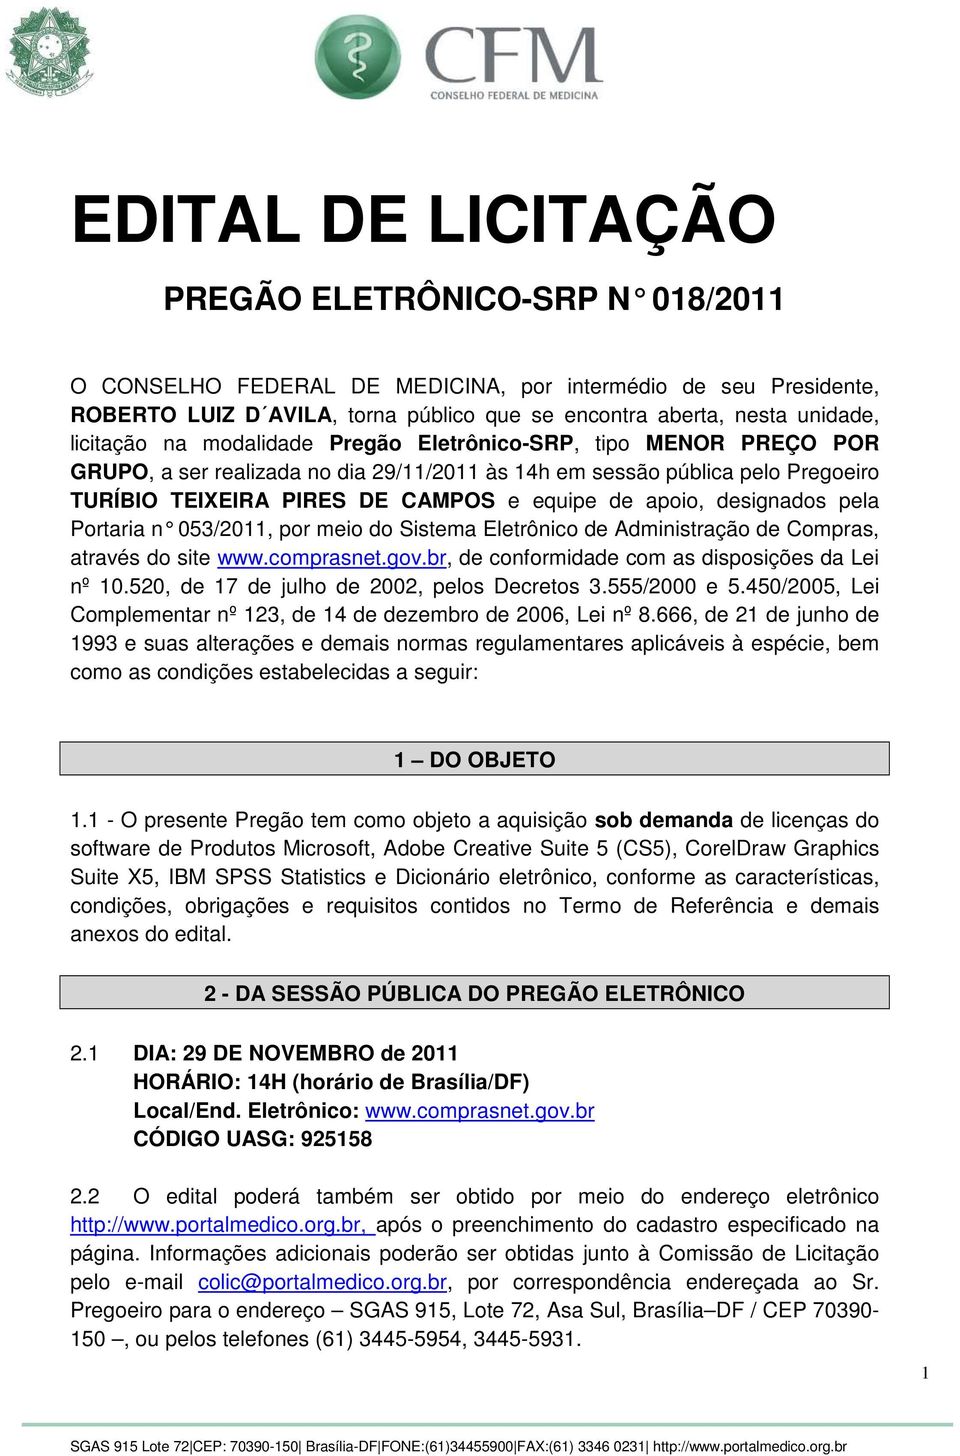 apoio, designados pela Portaria n 053/2011, por meio do Sistema Eletrônic o de Administração de Compras, através do site www.comprasnet.gov.br, de conformidade com as disposições da Lei nº 10.